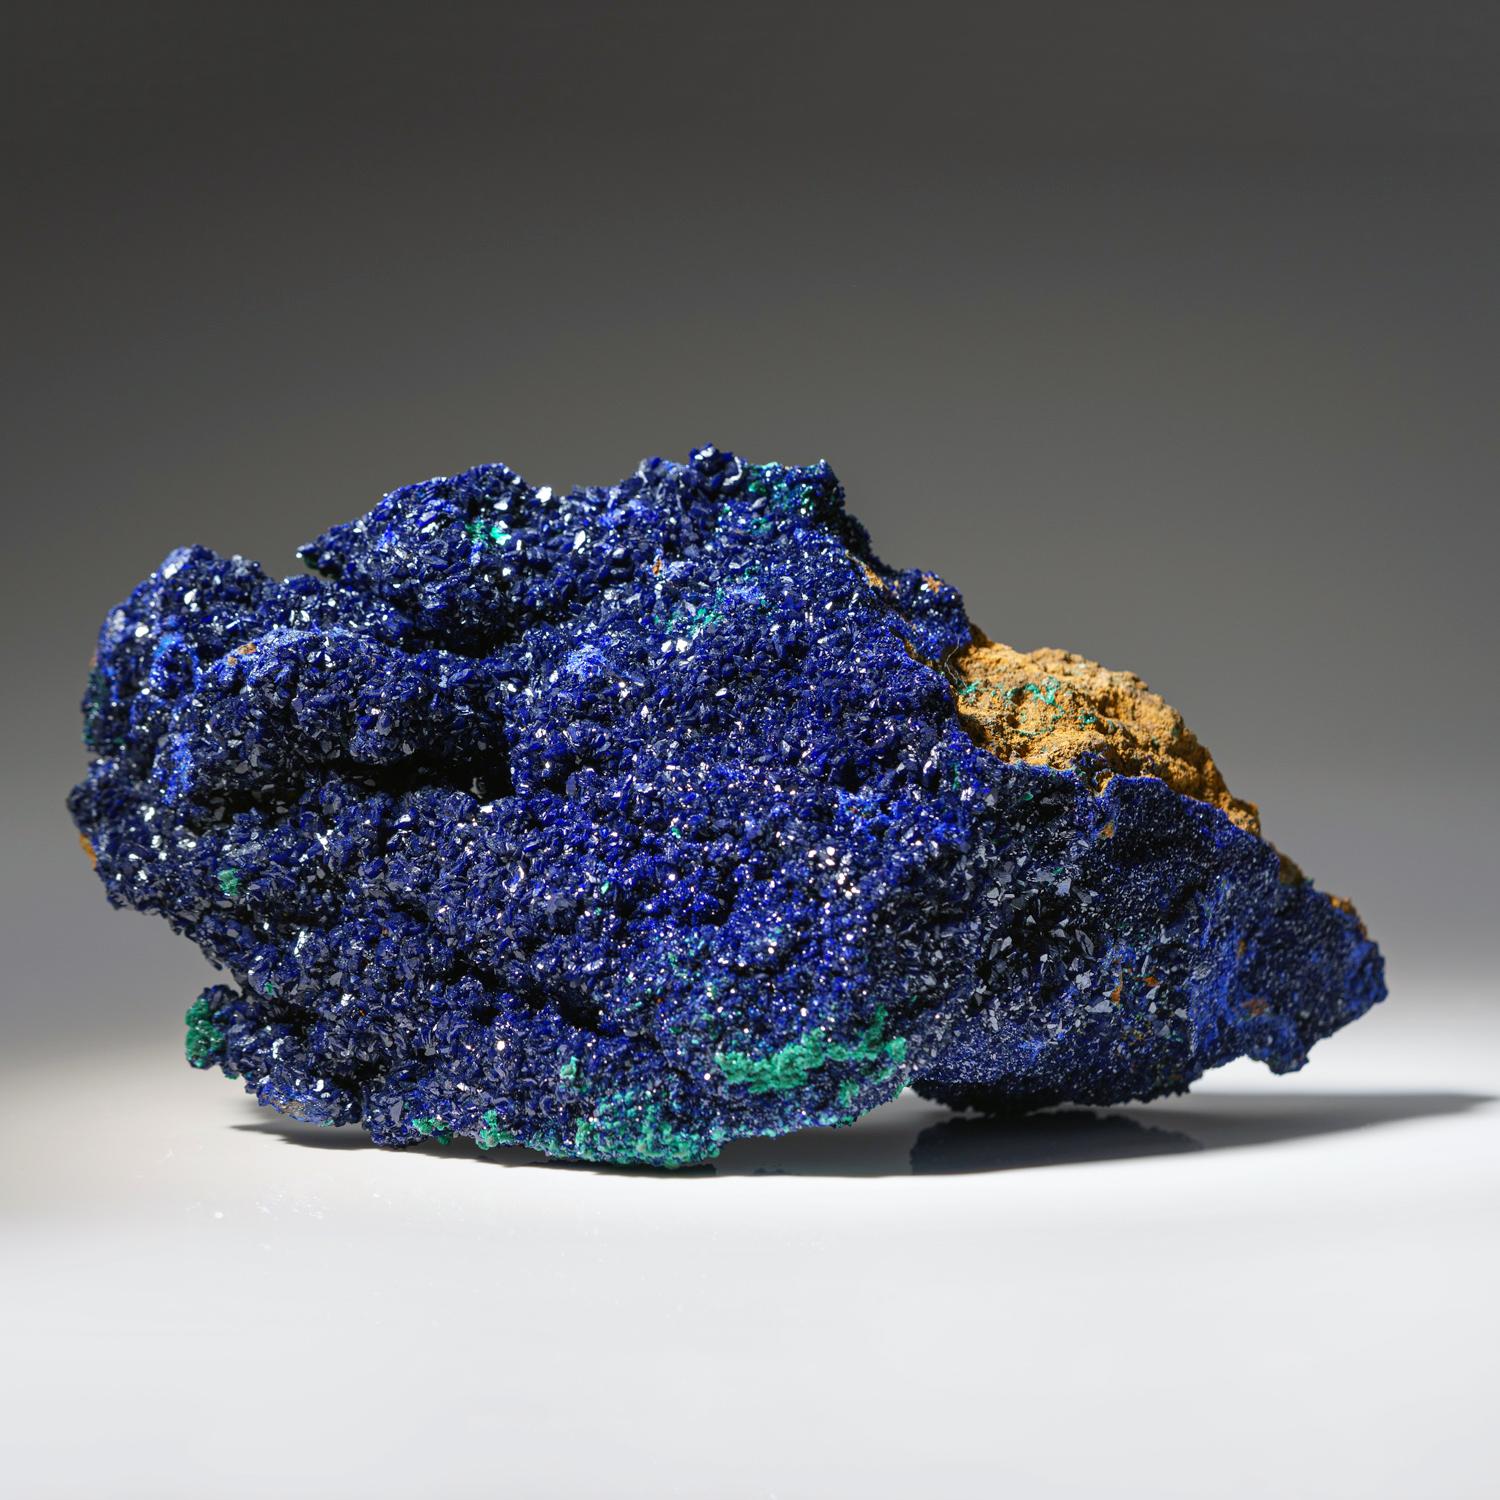 Aus der Tsumeb-Mine, Otavi-Bergland Distrikt, Oshikoto, Namibia

Reichhaltige Ansammlung von tief königsblauen Azuritkristallen auf Malachit-Duftit-Calcit-Matrix. Alle Azuritkristalle sind hochglänzend und weisen eine komplexe Kristallentwicklung